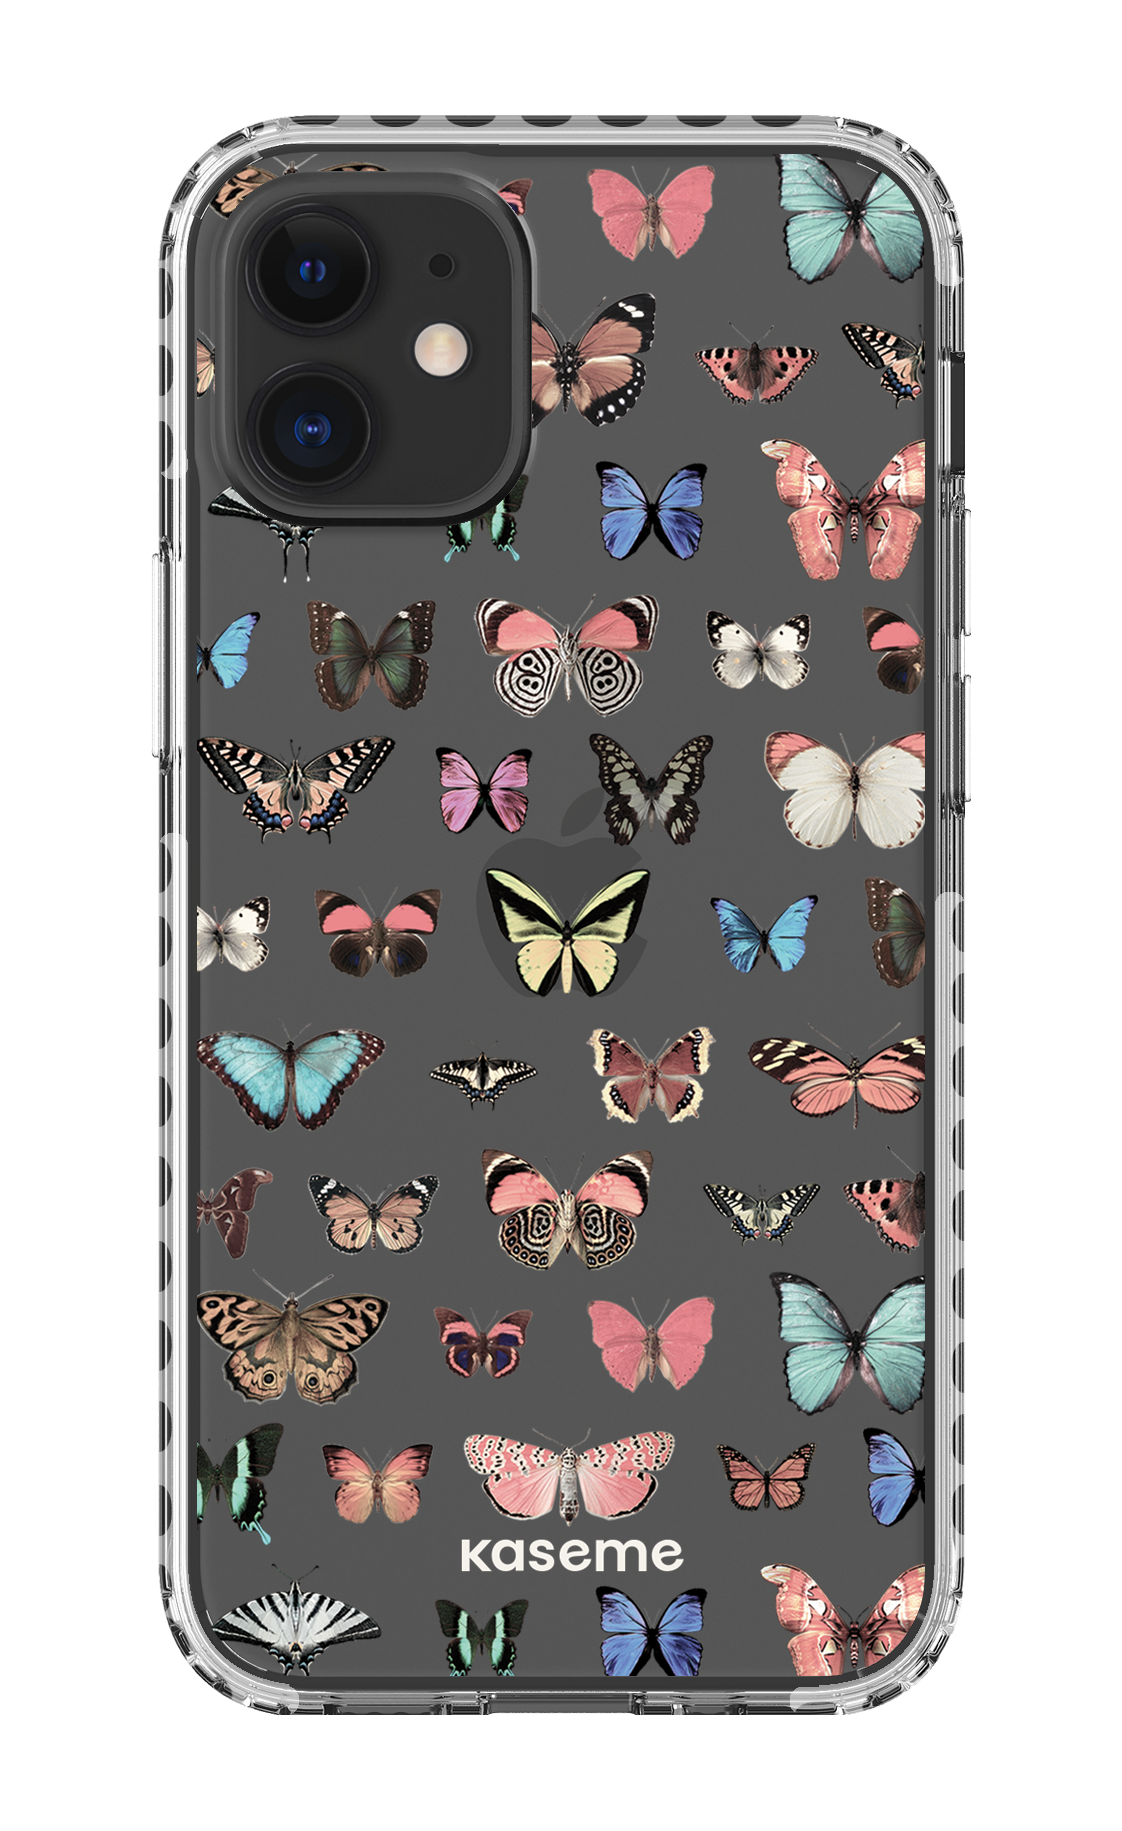 Paloma clear case - iPhone 12 Mini